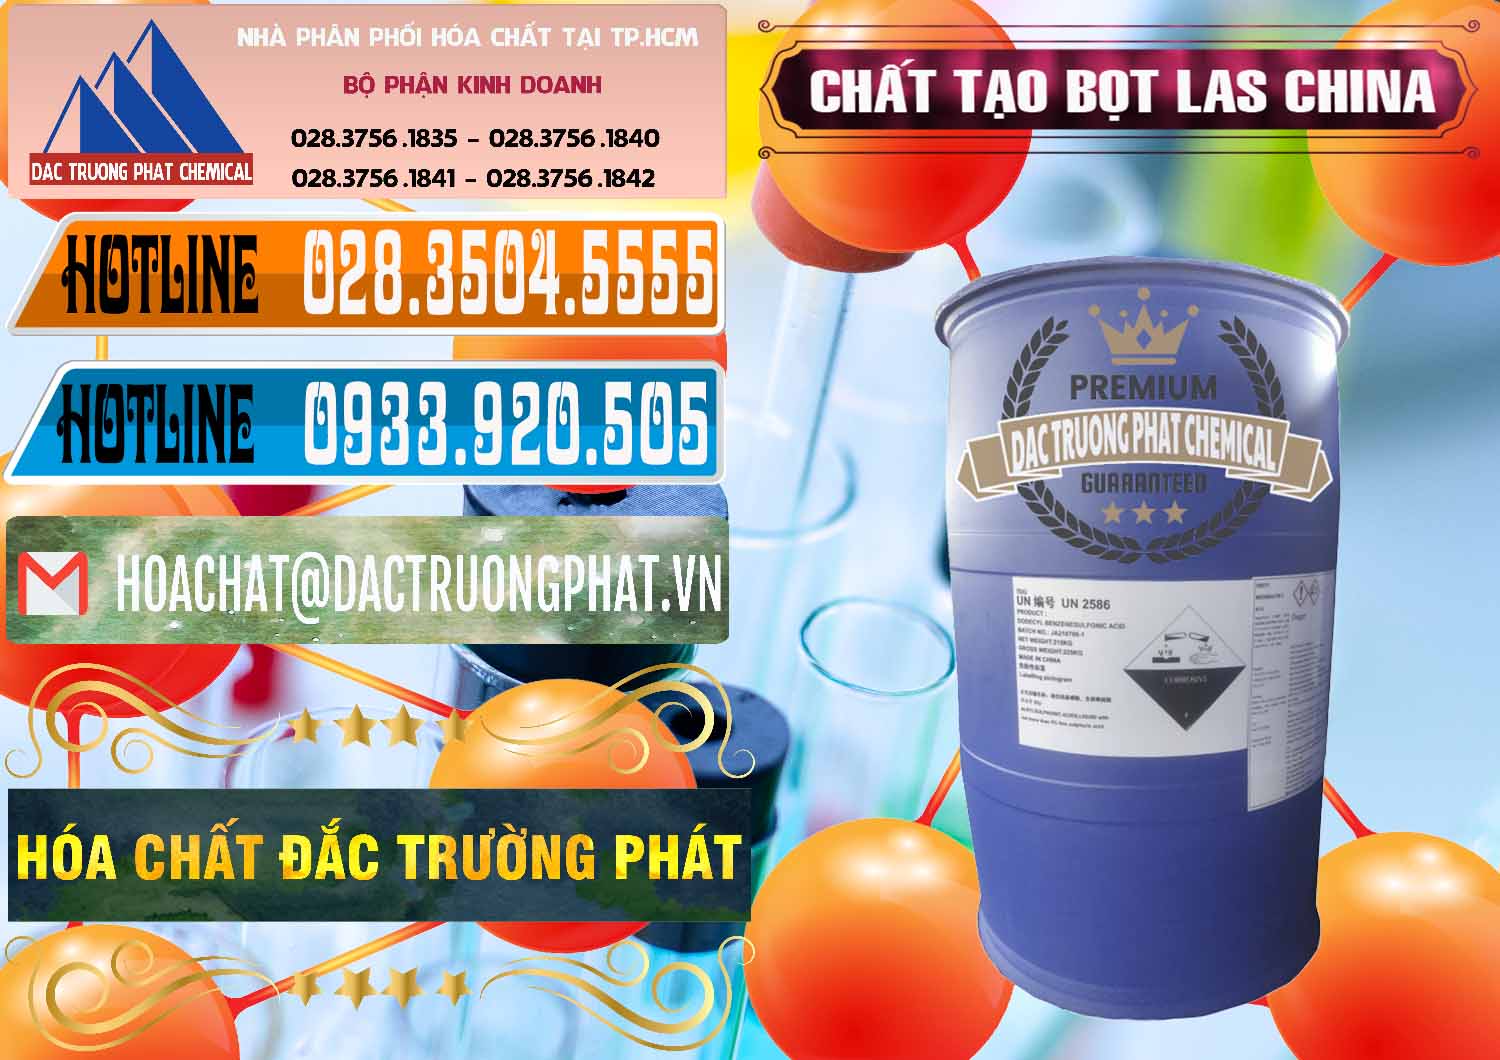 Nơi chuyên bán & phân phối Chất tạo bọt Las Trung Quốc China - 0451 - Nhập khẩu - cung cấp hóa chất tại TP.HCM - stmp.net